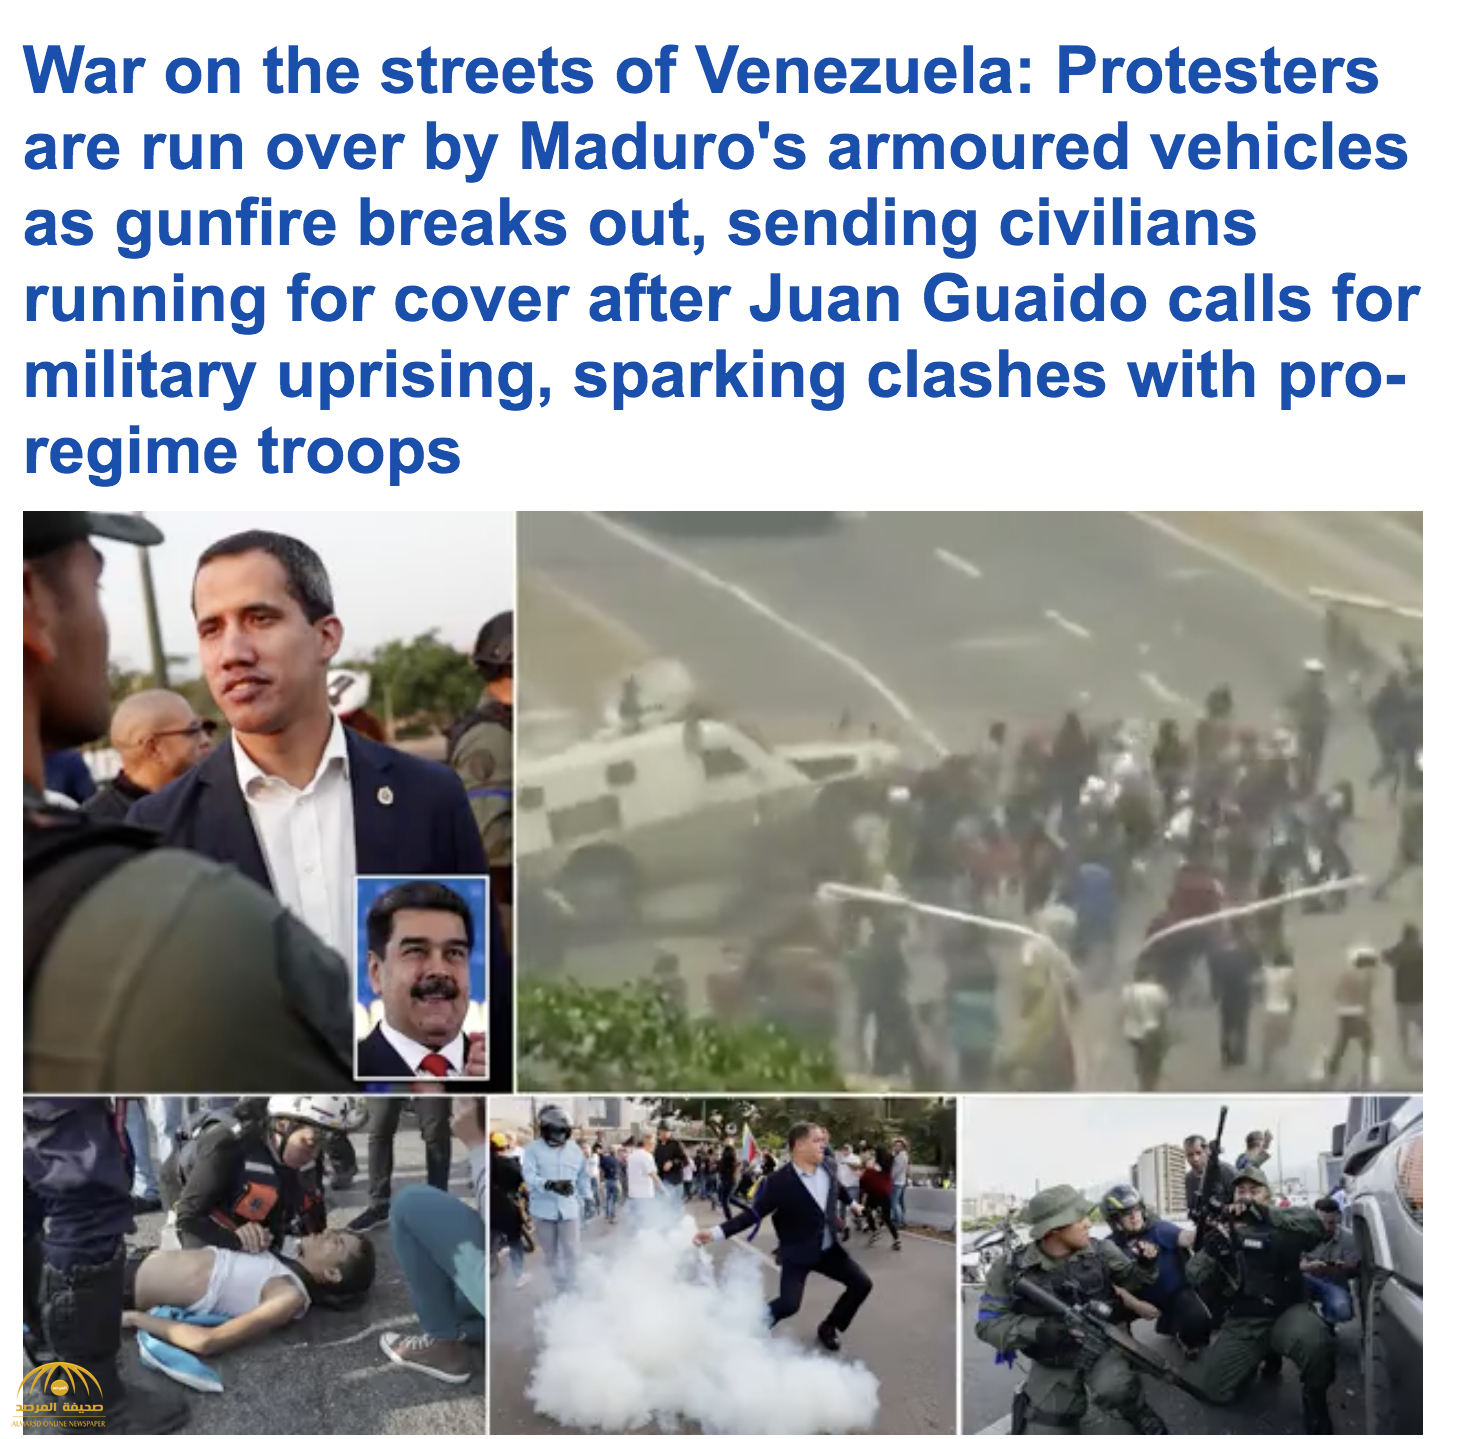 بالصور والفيديو  : شاهد .. حرب شوارع في العاصمة الفنزويلية "كاركاس" بين الشرطة وأنصار "غوايدو"